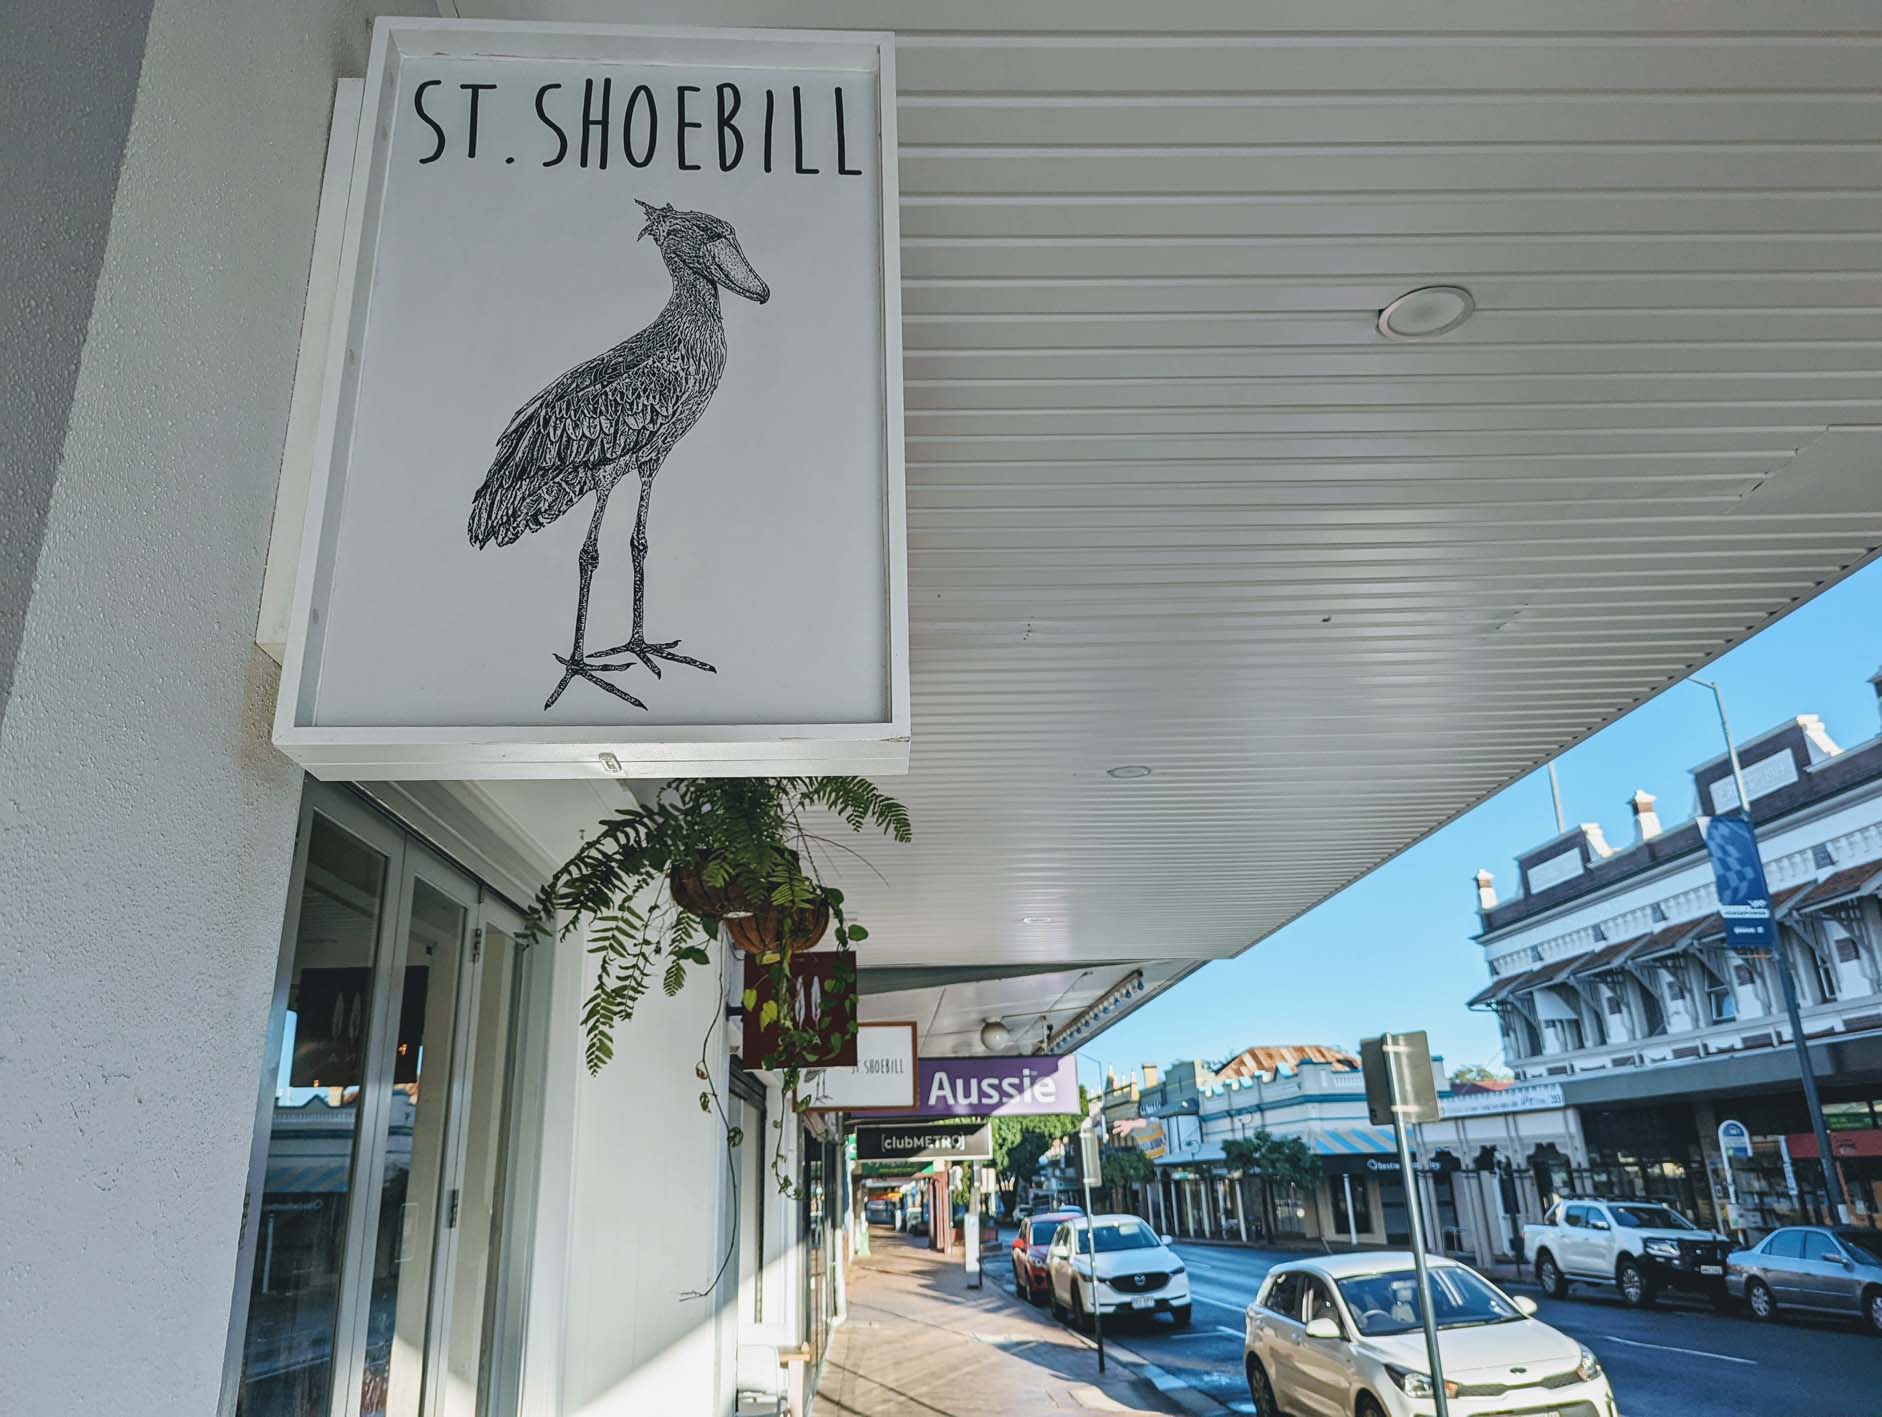 St Shoebill sign